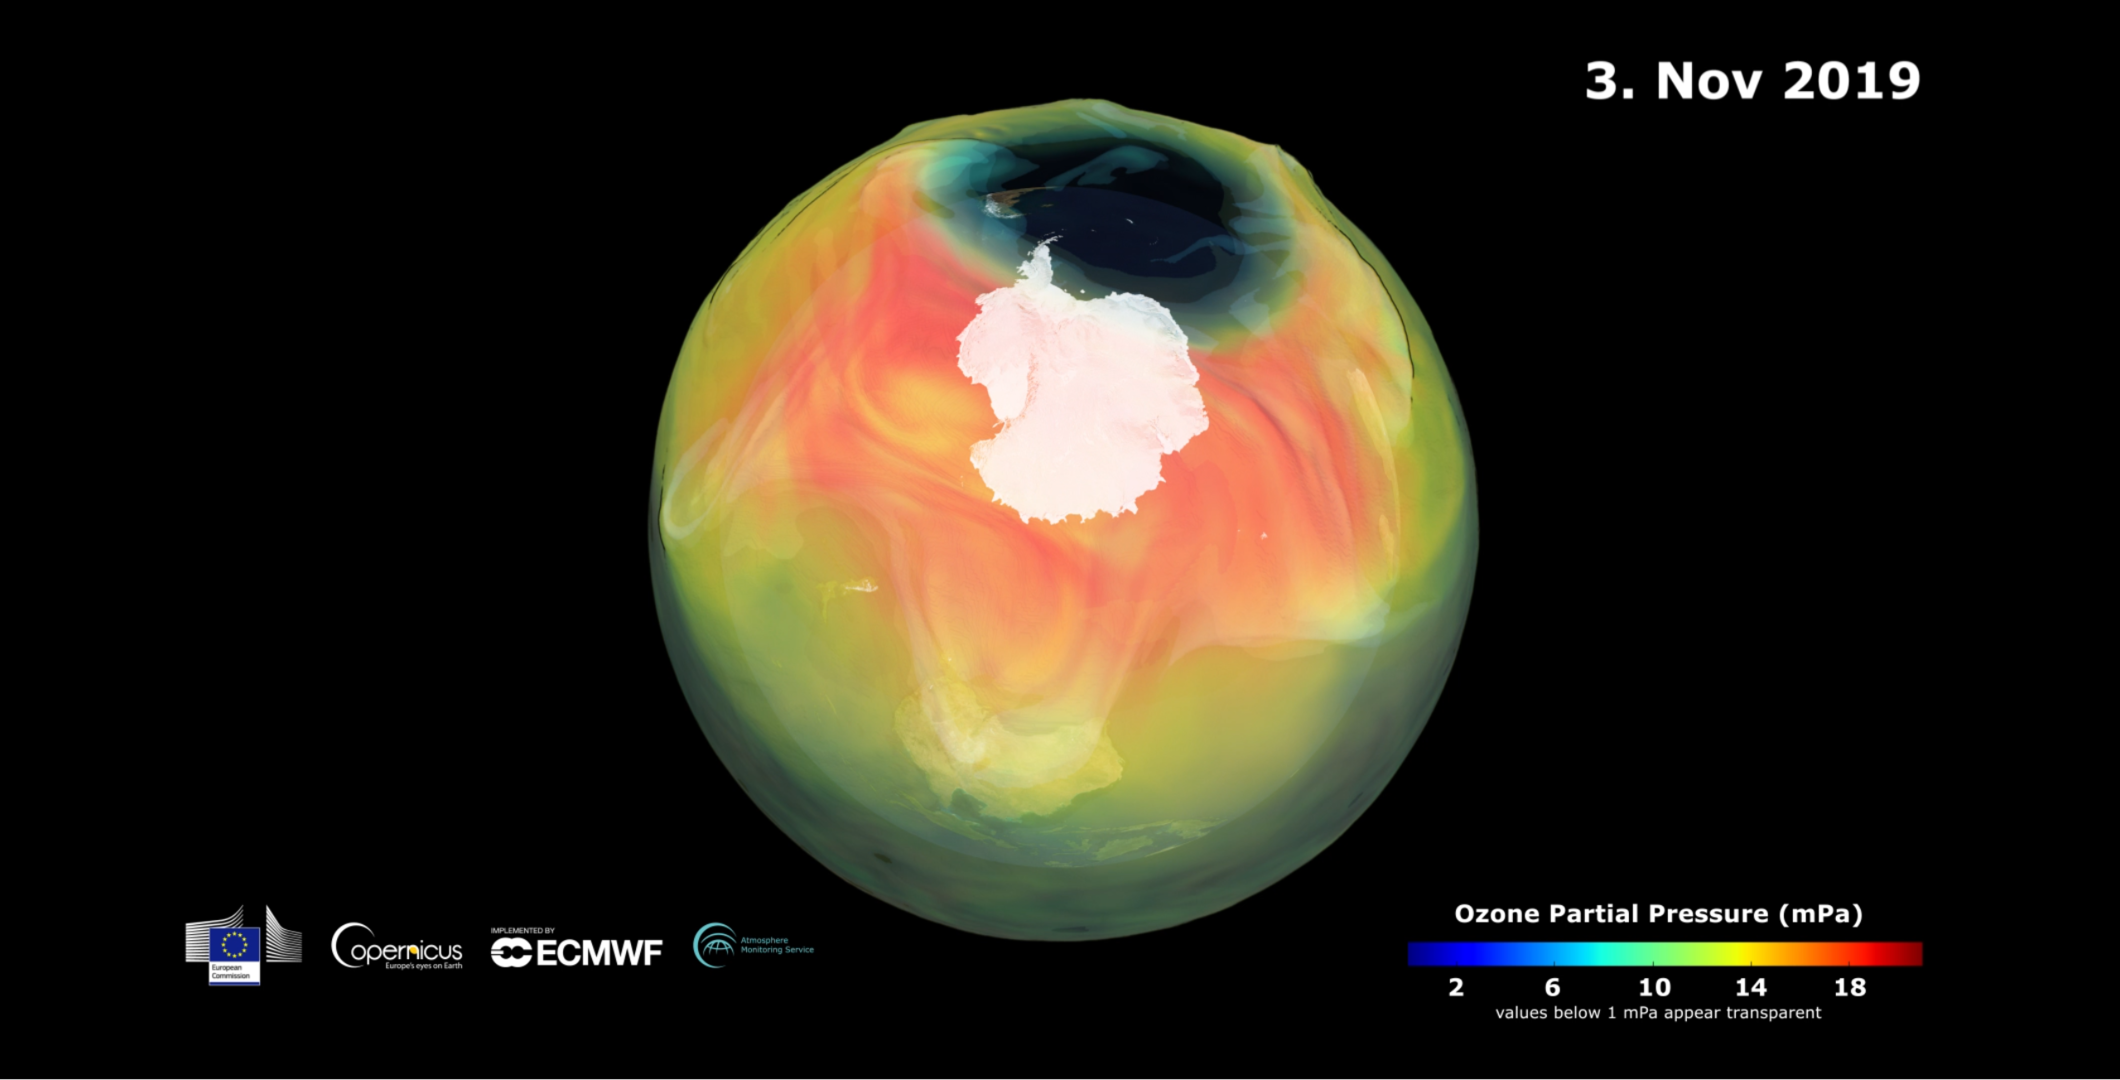 ESA - Ozone hole set to close